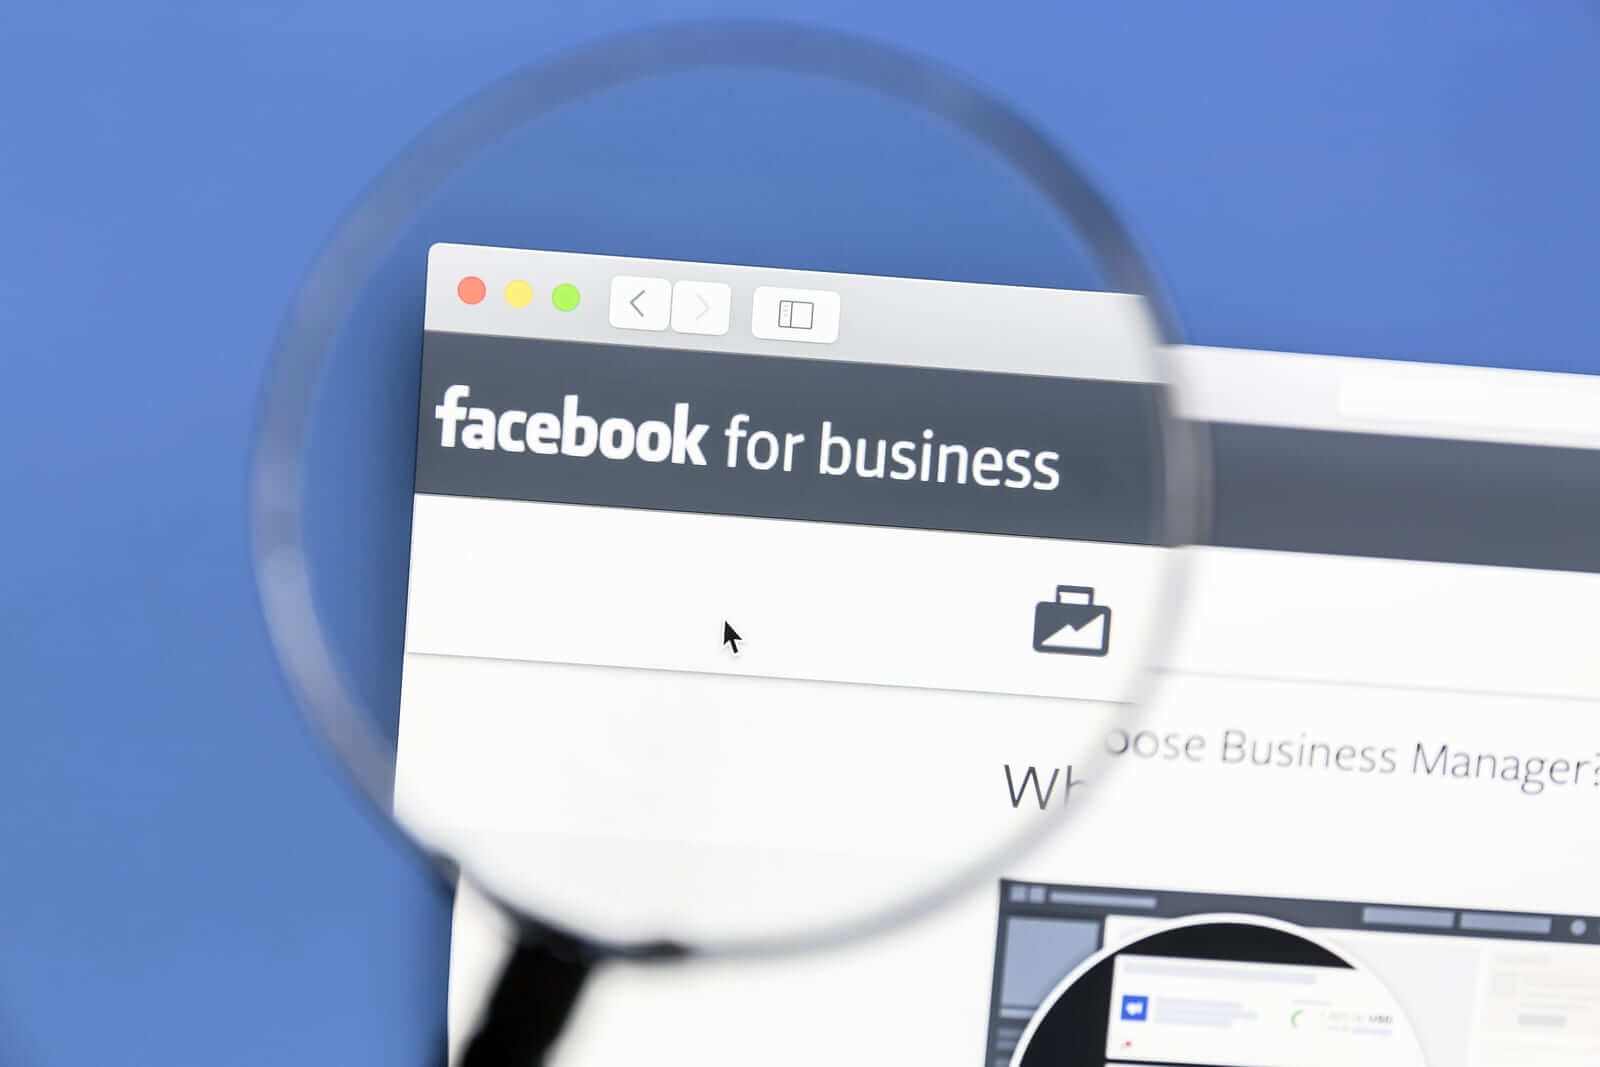 التسويق لنشاطك التجاري على فيسبوك لزيادة المبيعات